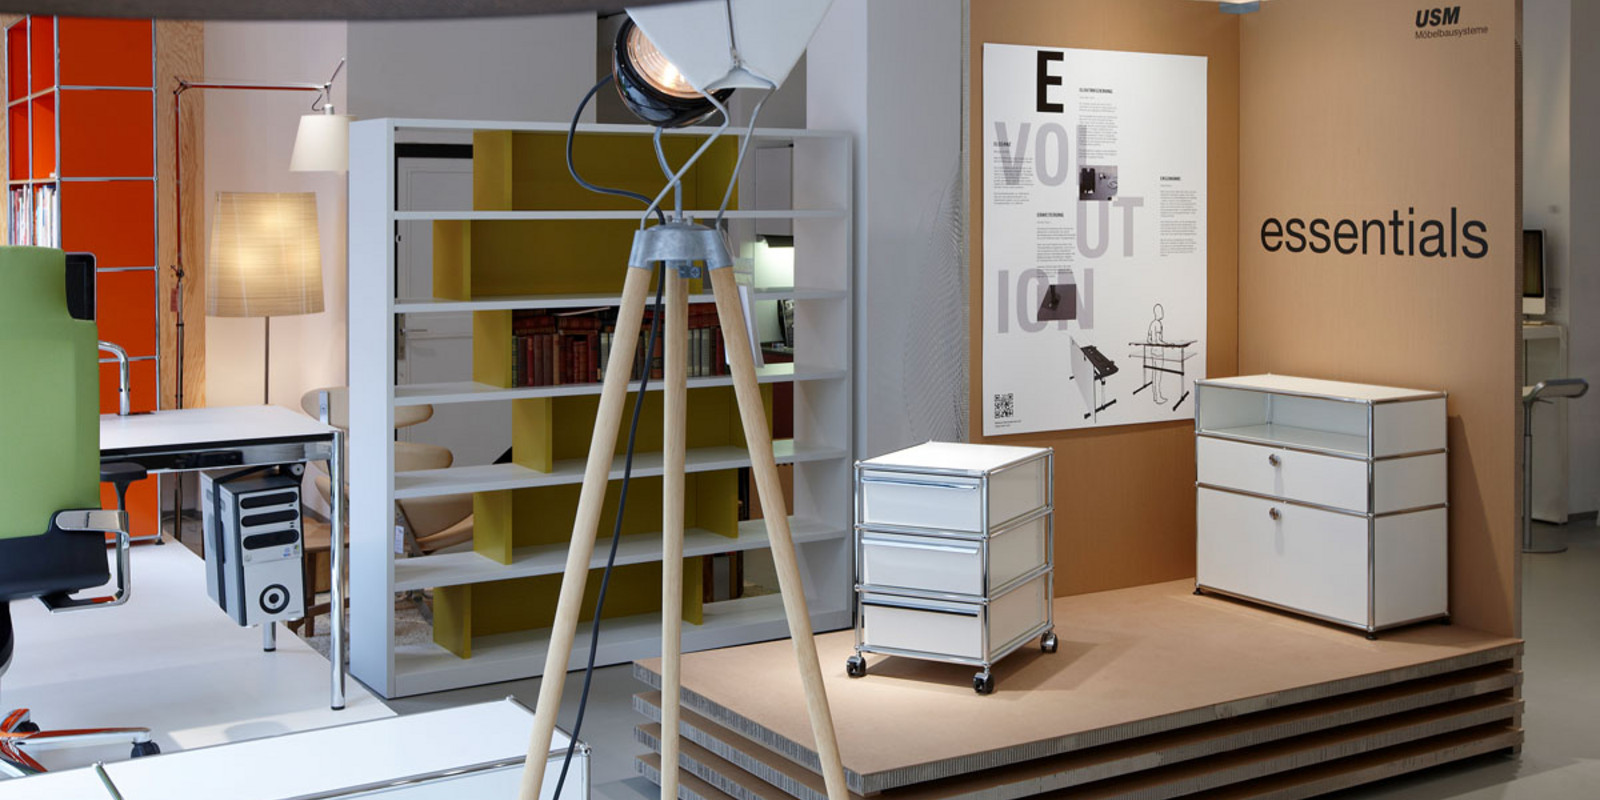 pro office Bremen präsentiert USM Ausstellung « working essentials» 2012 Bild 2